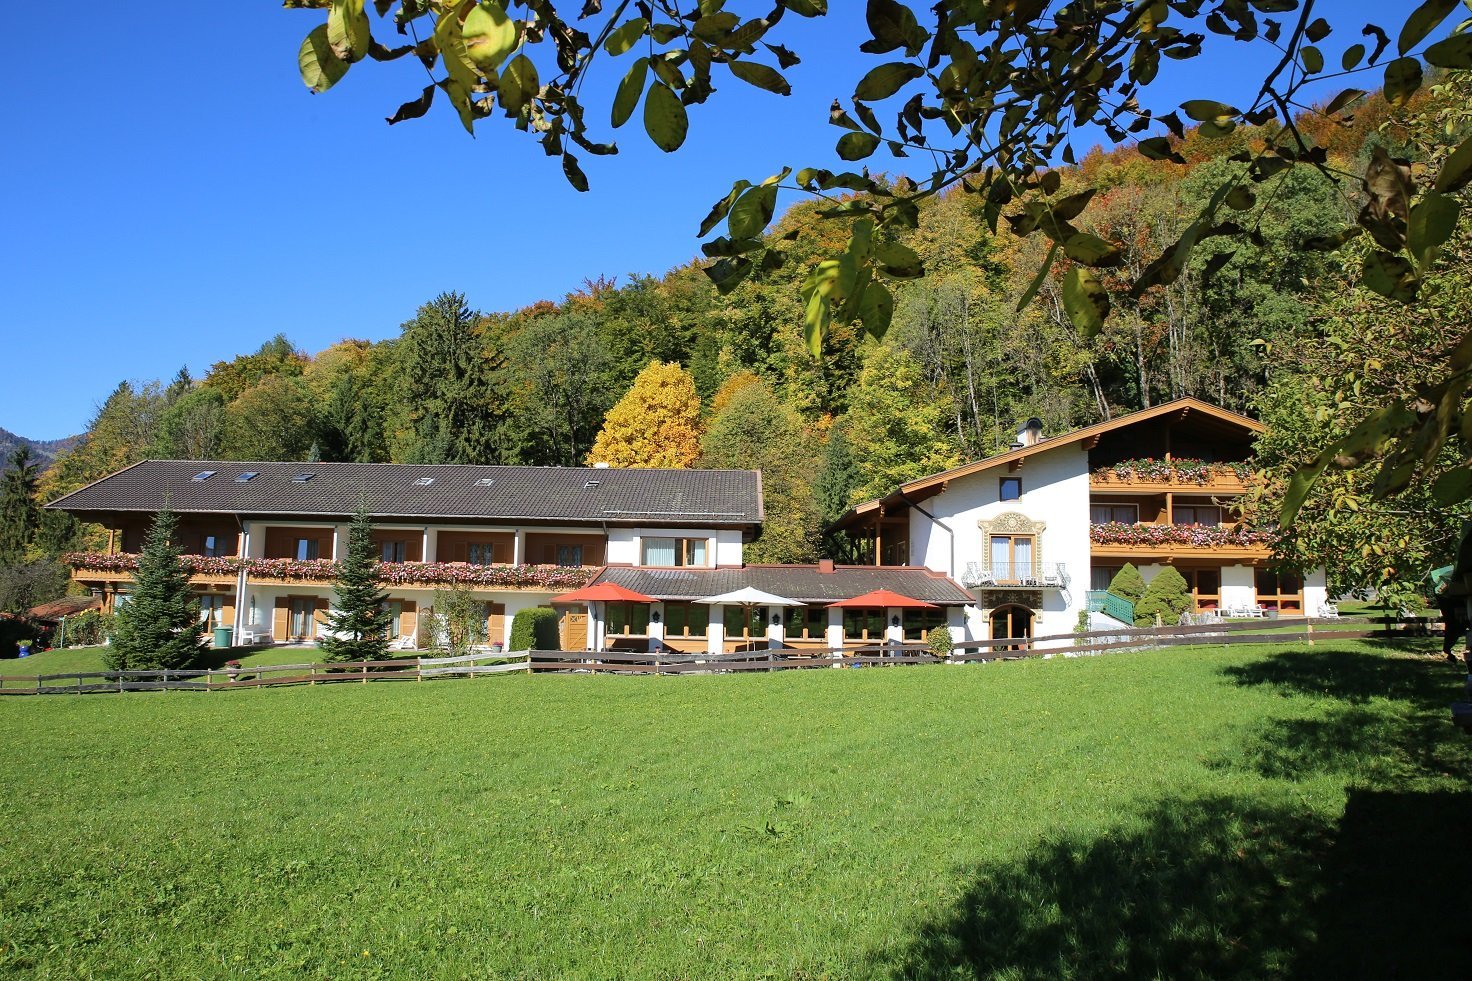 4 Tage Wander – Verwöhntage – Landhotel Gabriele (3 Sterne) in Unterwössen, Bayern inkl. All Inclusive